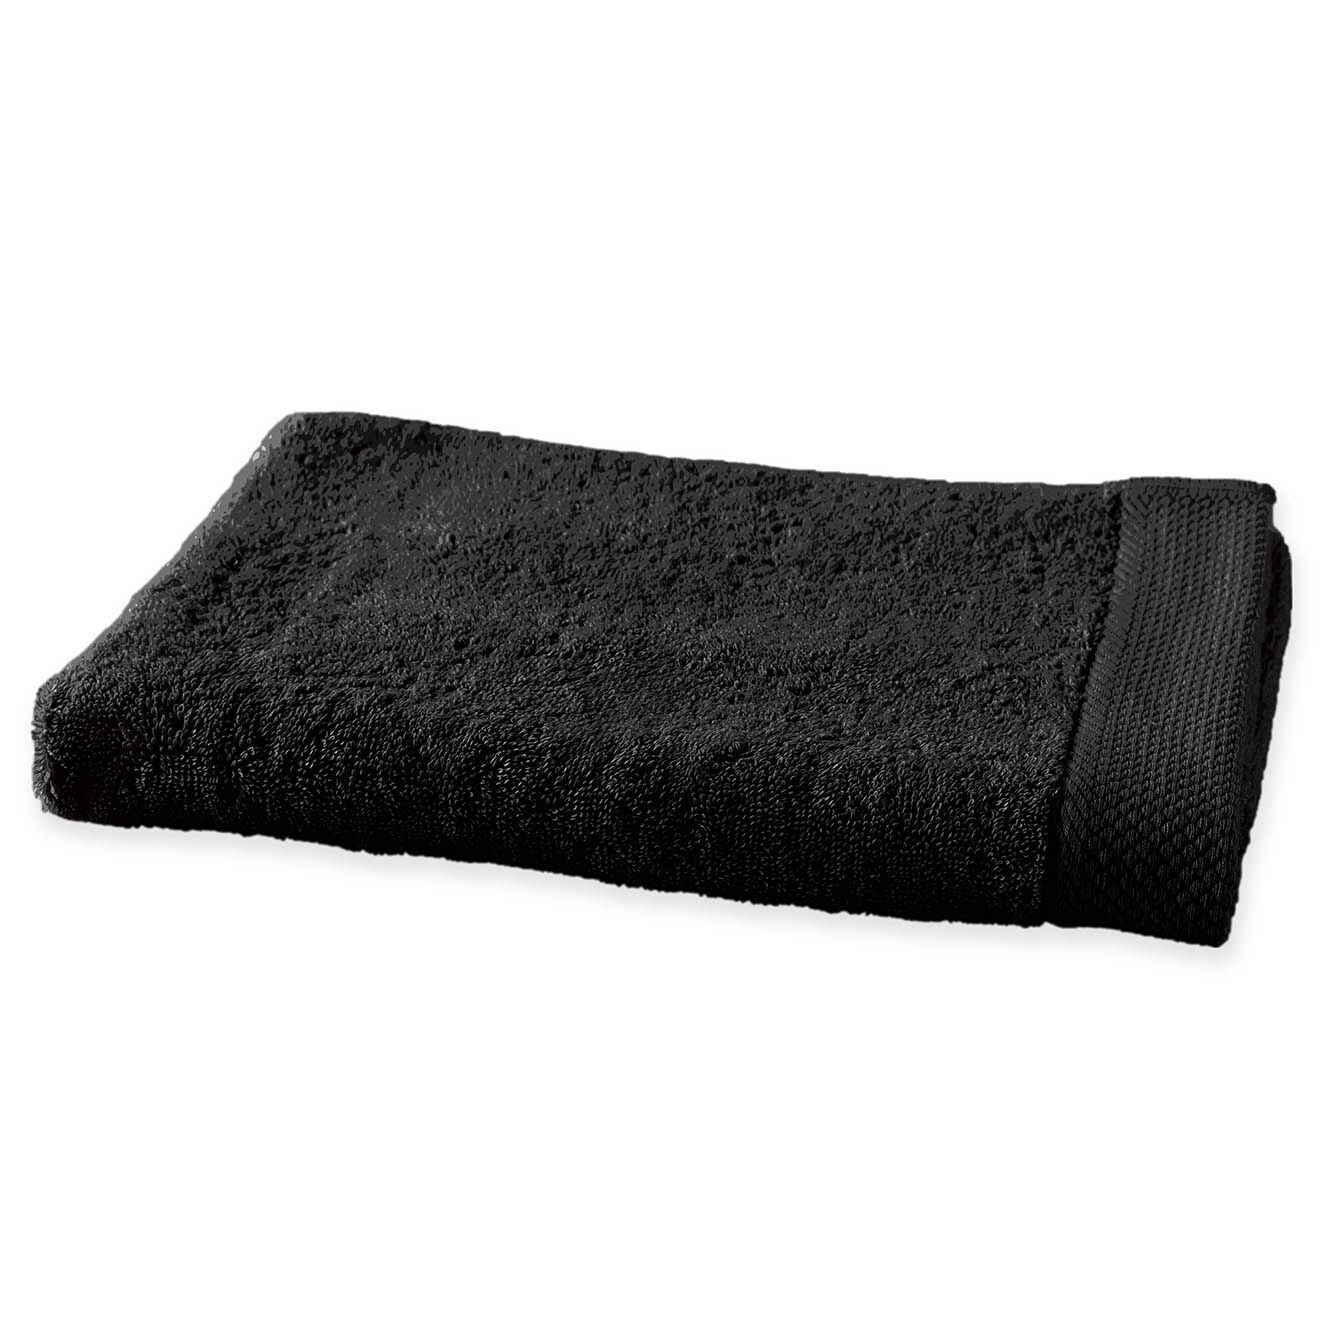 soft by perle de coton - serviette de toilette noire - 50x100 cm